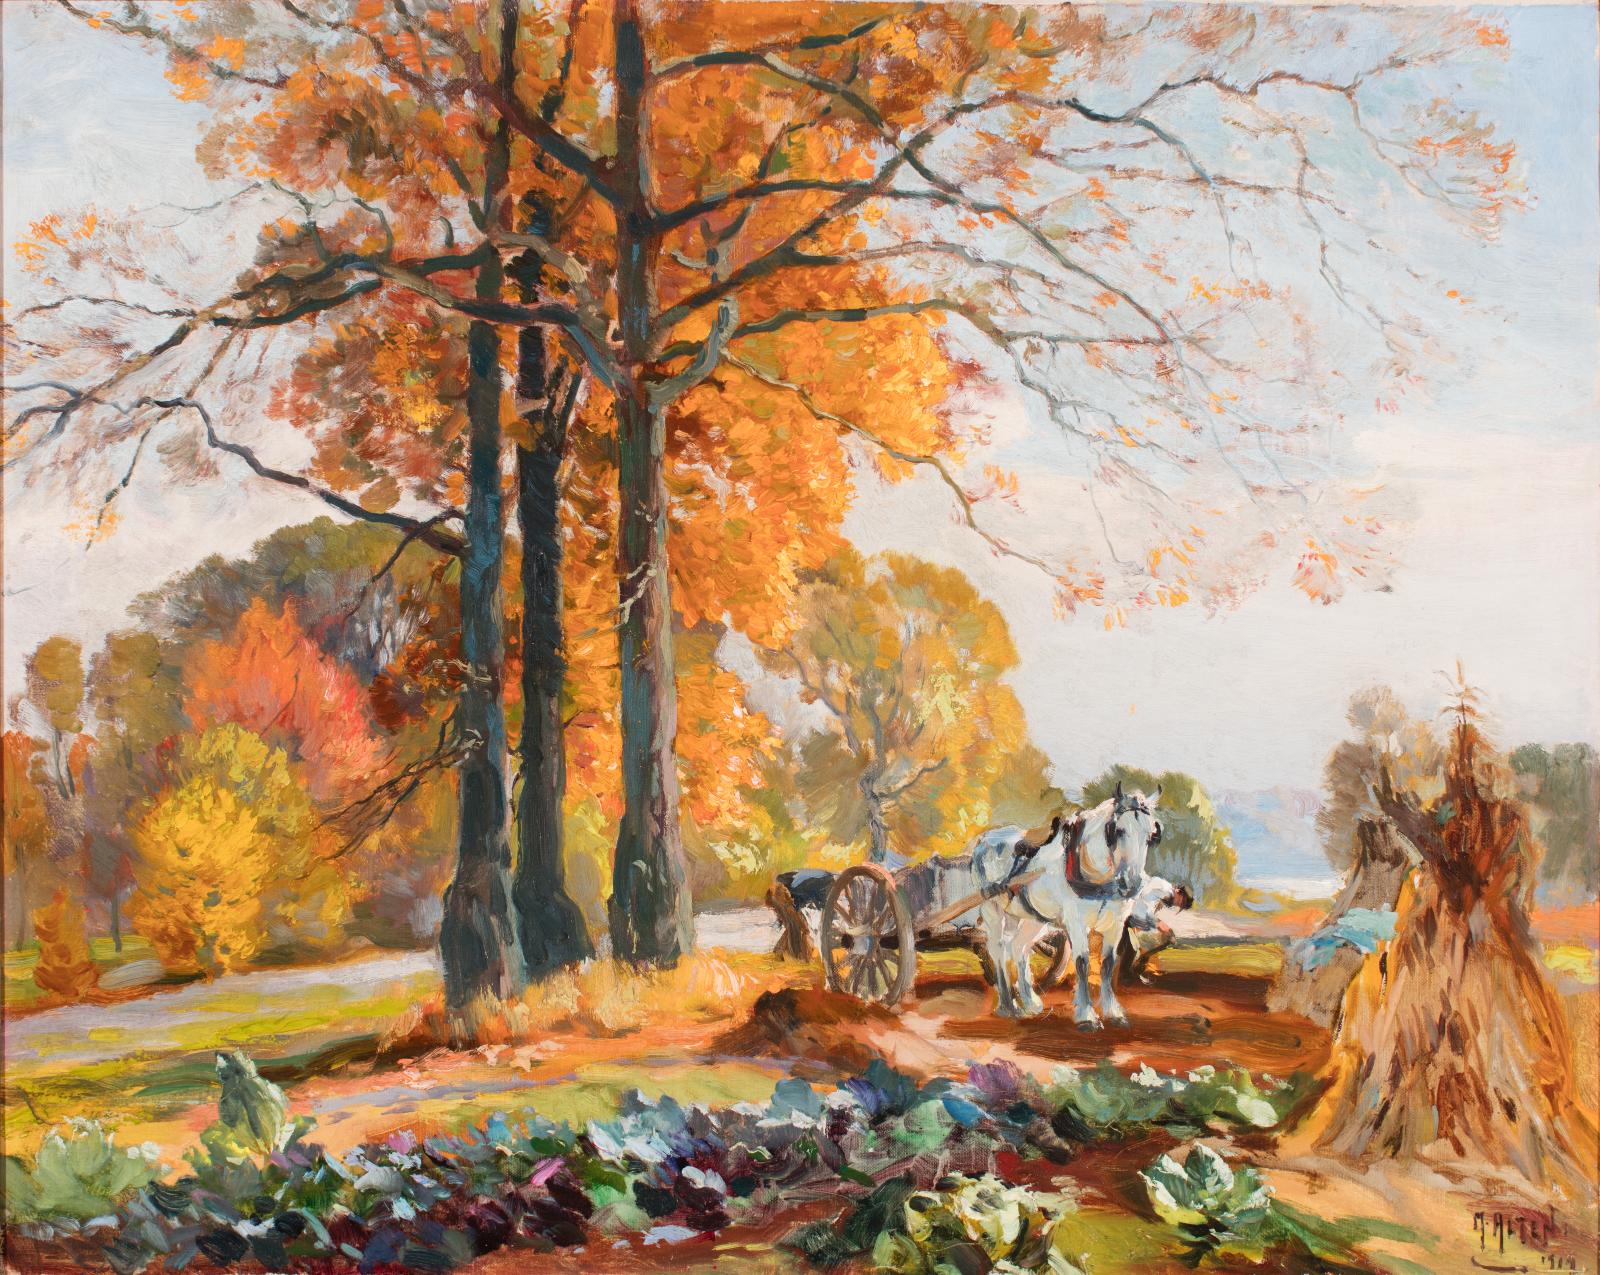 Oil landscape painting.